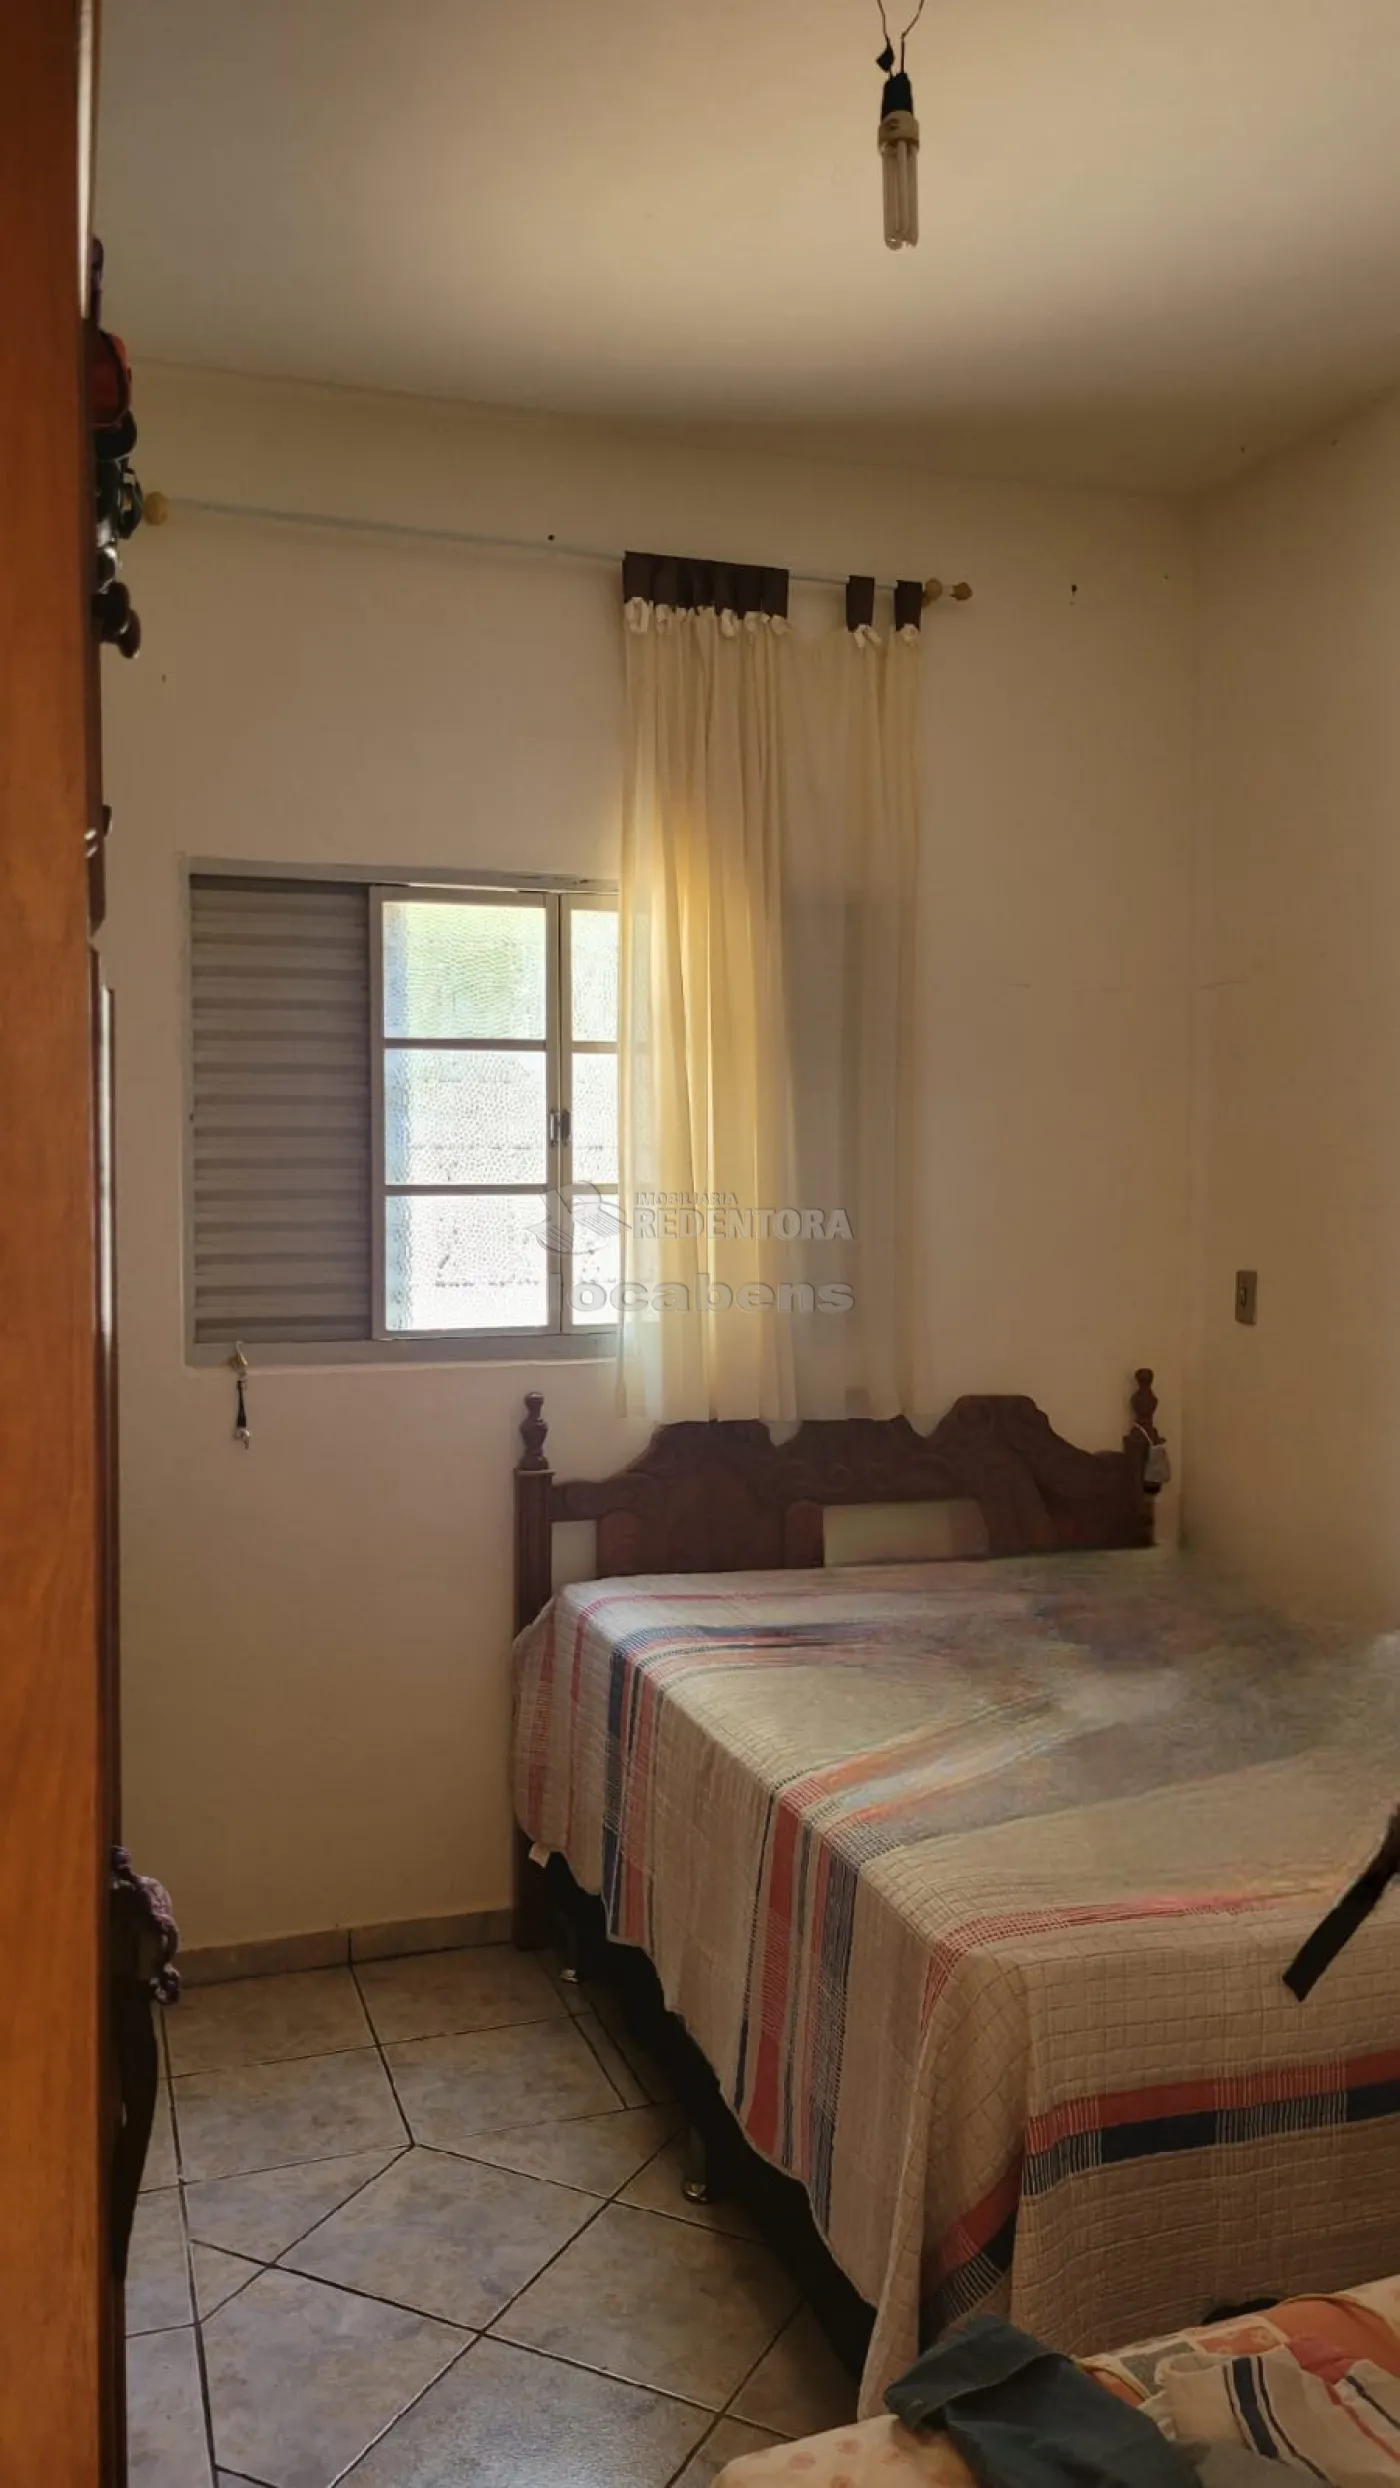 Comprar Casa / Padrão em São José do Rio Preto apenas R$ 360.000,00 - Foto 8